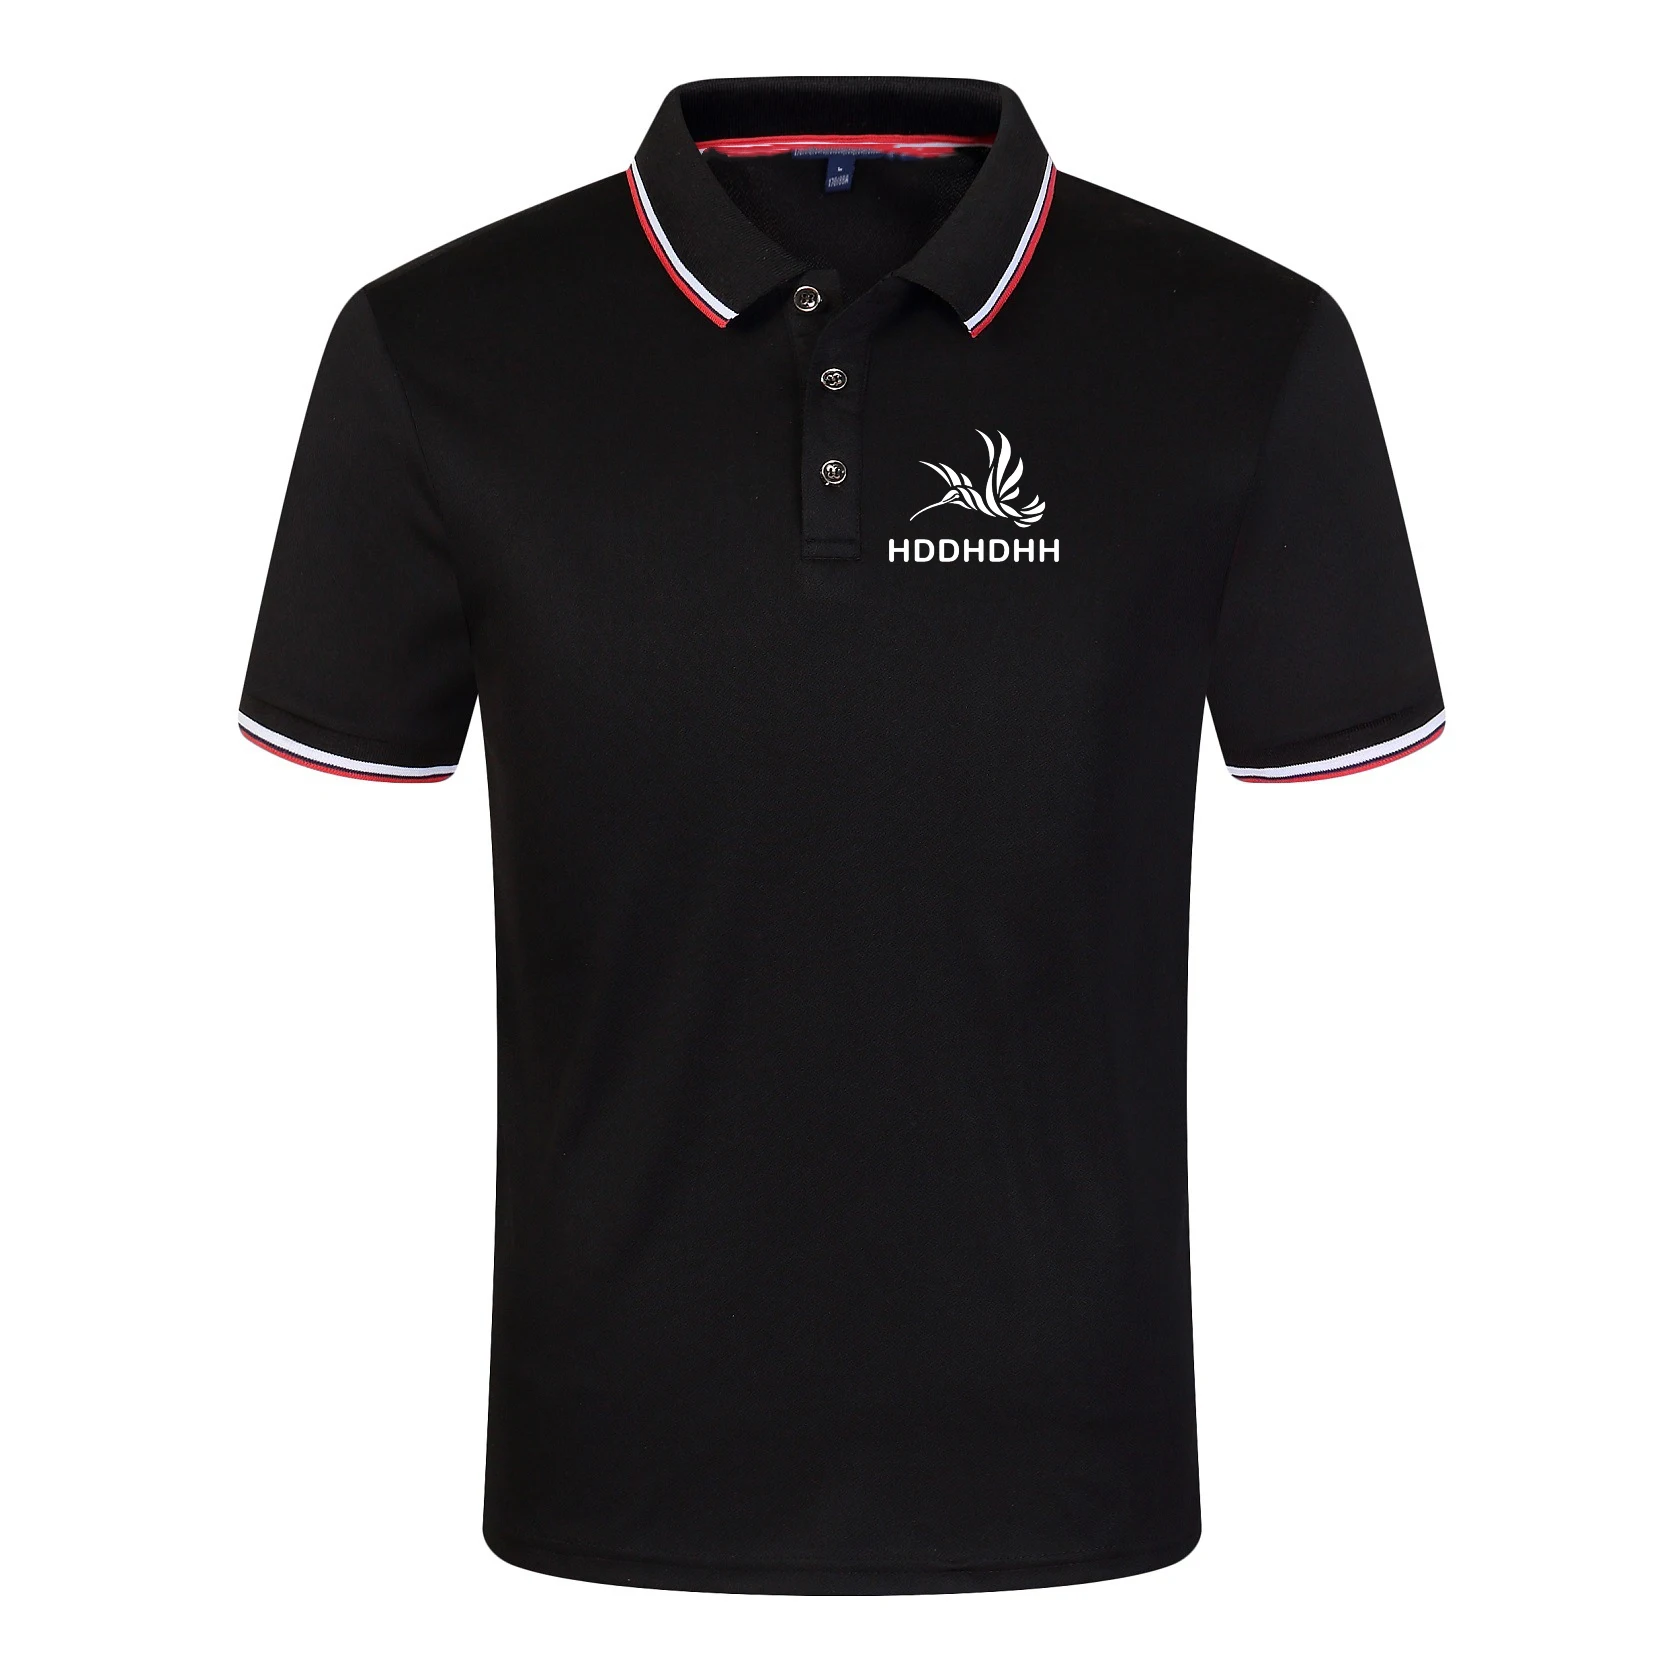 Letnia koszulka Polo z nadrukiem marki hddhhh z krótkim rękawem męska koszulka biznes na co dzień luźna prosta stylowy Top